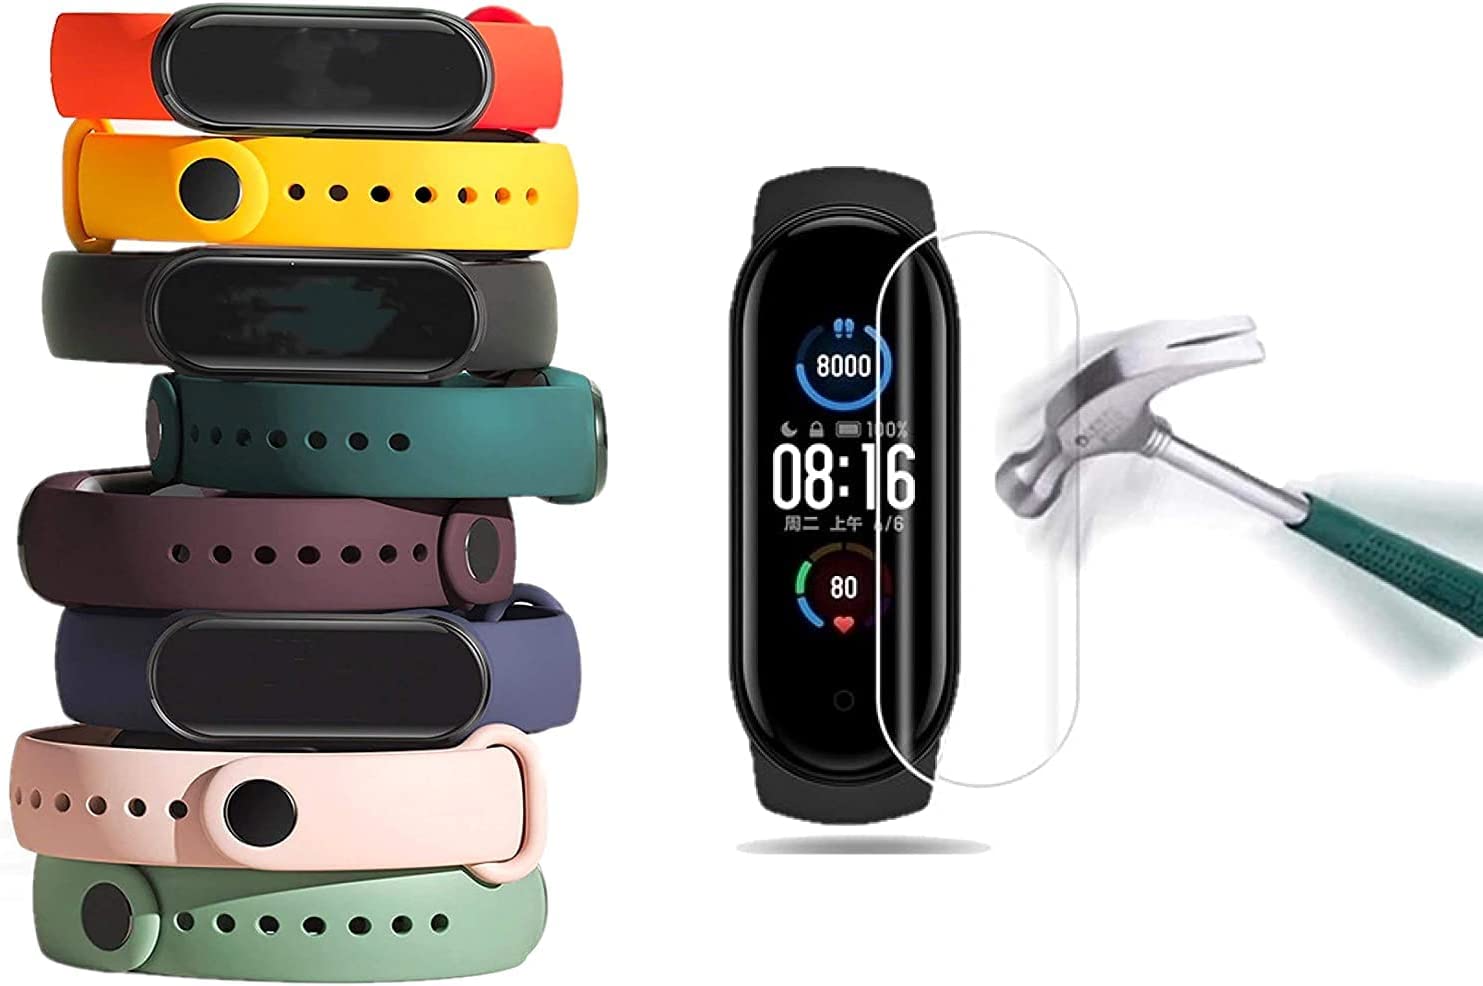 Pulseiras de relógio TwiHill para Mi Band 6 e 5, pulseira de silicone de estilo clássico Correia de relógio para Xiaomi Smart Band 6 e 5, Kit com 8 unidades + 1 Películas Nano Bordas Pretas [TwiHill]-para XiaomiSite oficial de vendas da TwiHill